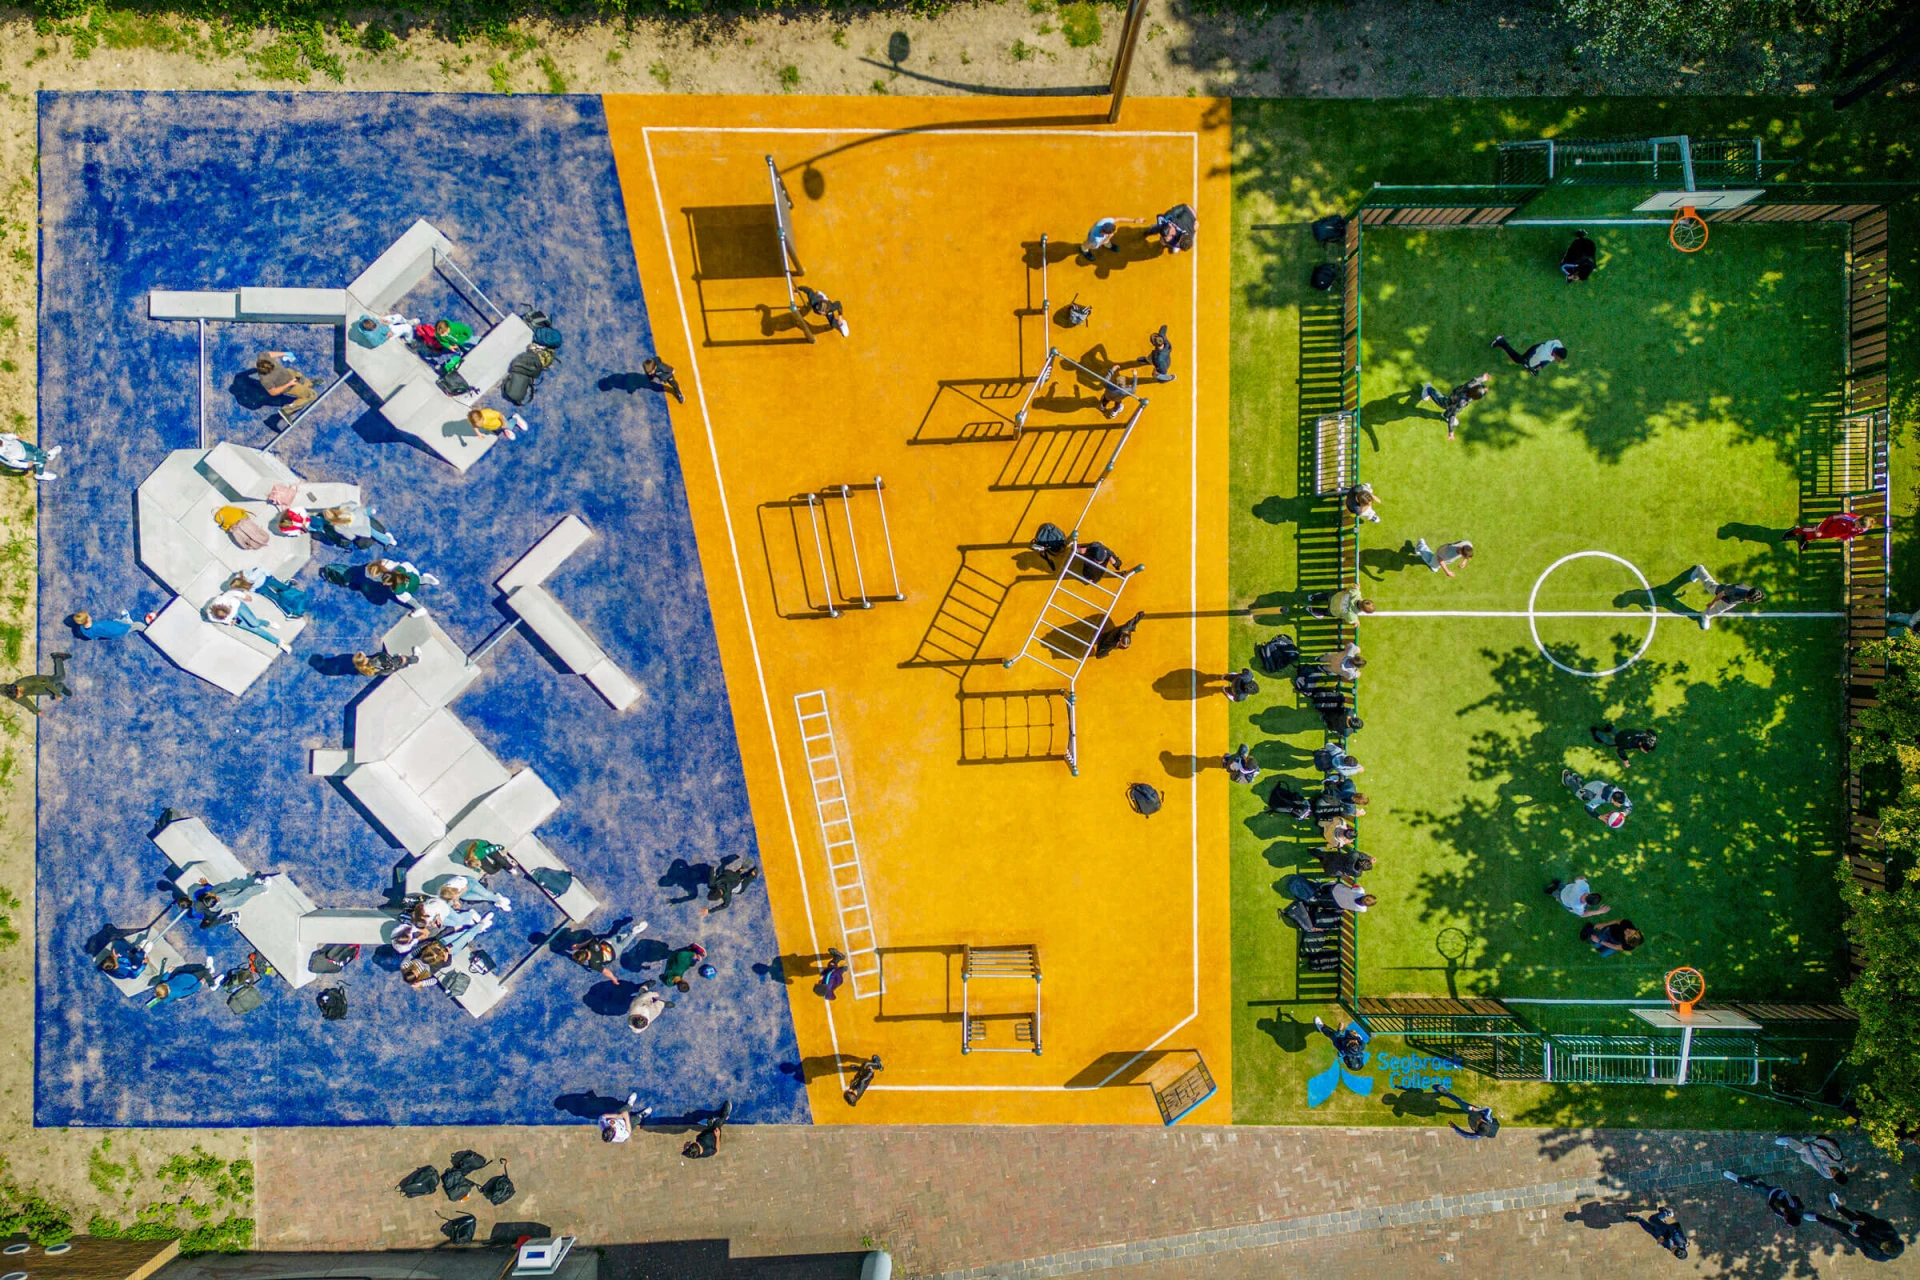 Vue aérienne d'une cour de récréation avec aire de fitness et de jeu de balle